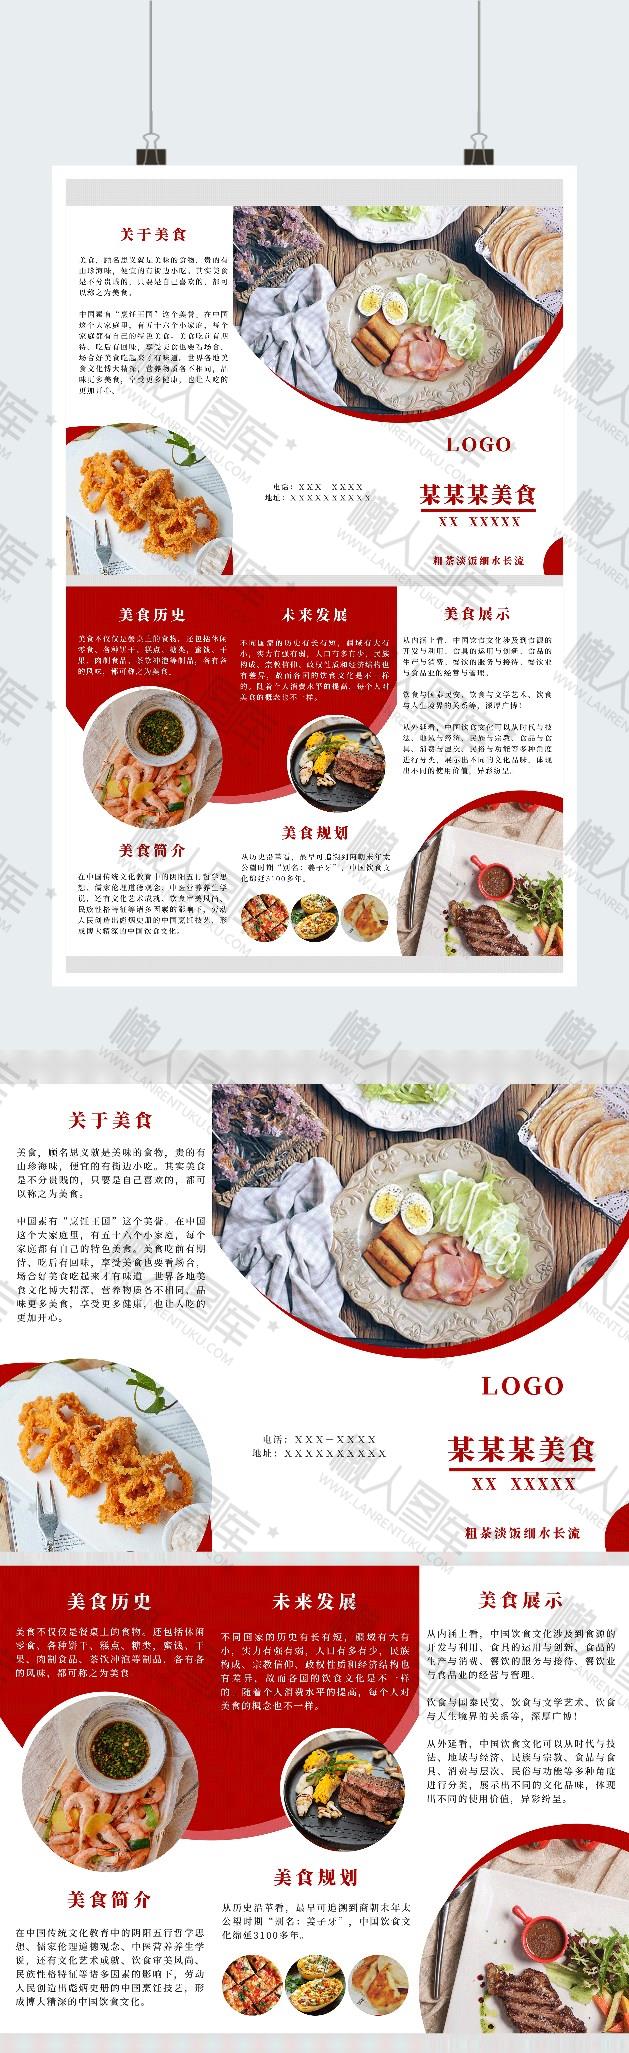 美食画册设计psd模板-创意美食画册设计排版样式图片下载_懒人图库